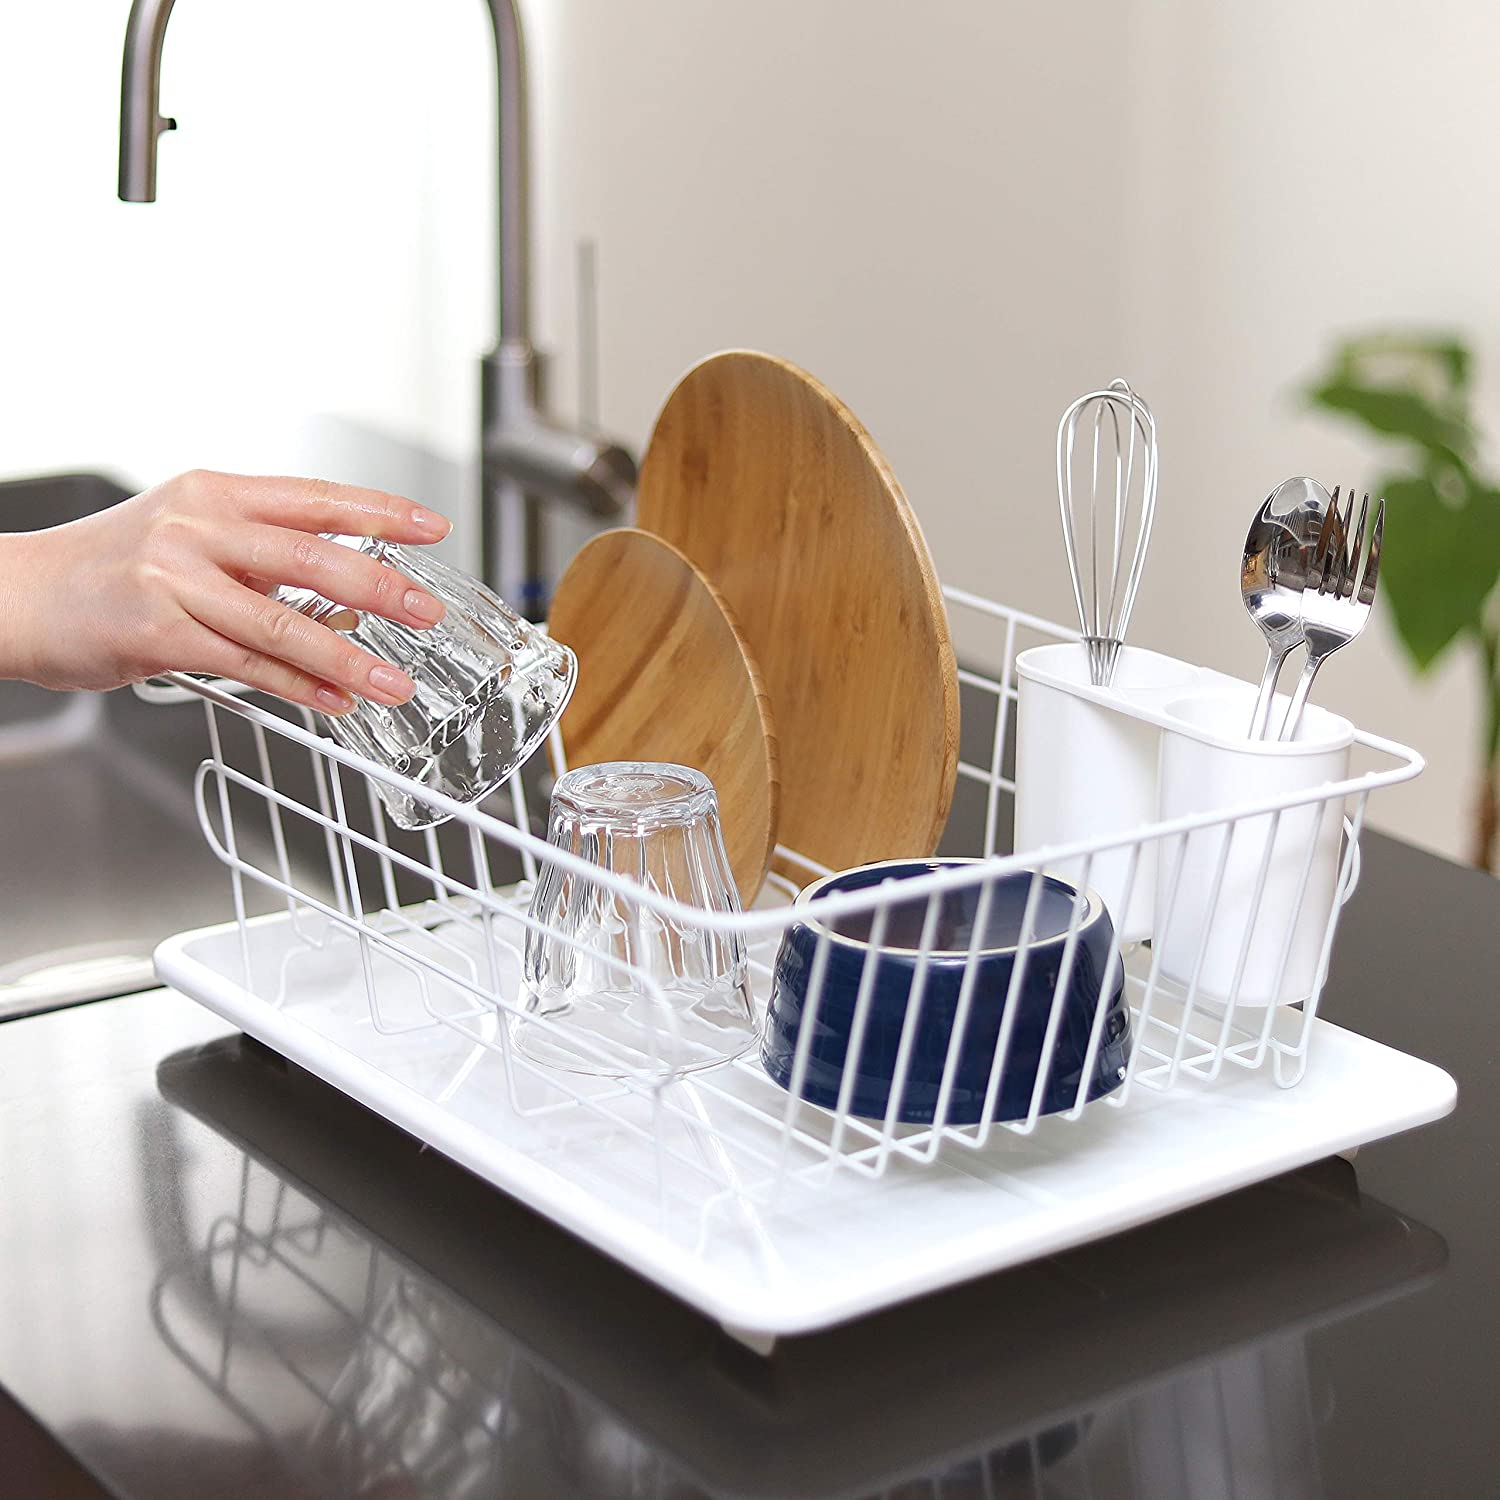 日本CAINZ碗架沥水架不锈钢铁碗碟架厨房置物架碗筷晾放架沥碗架